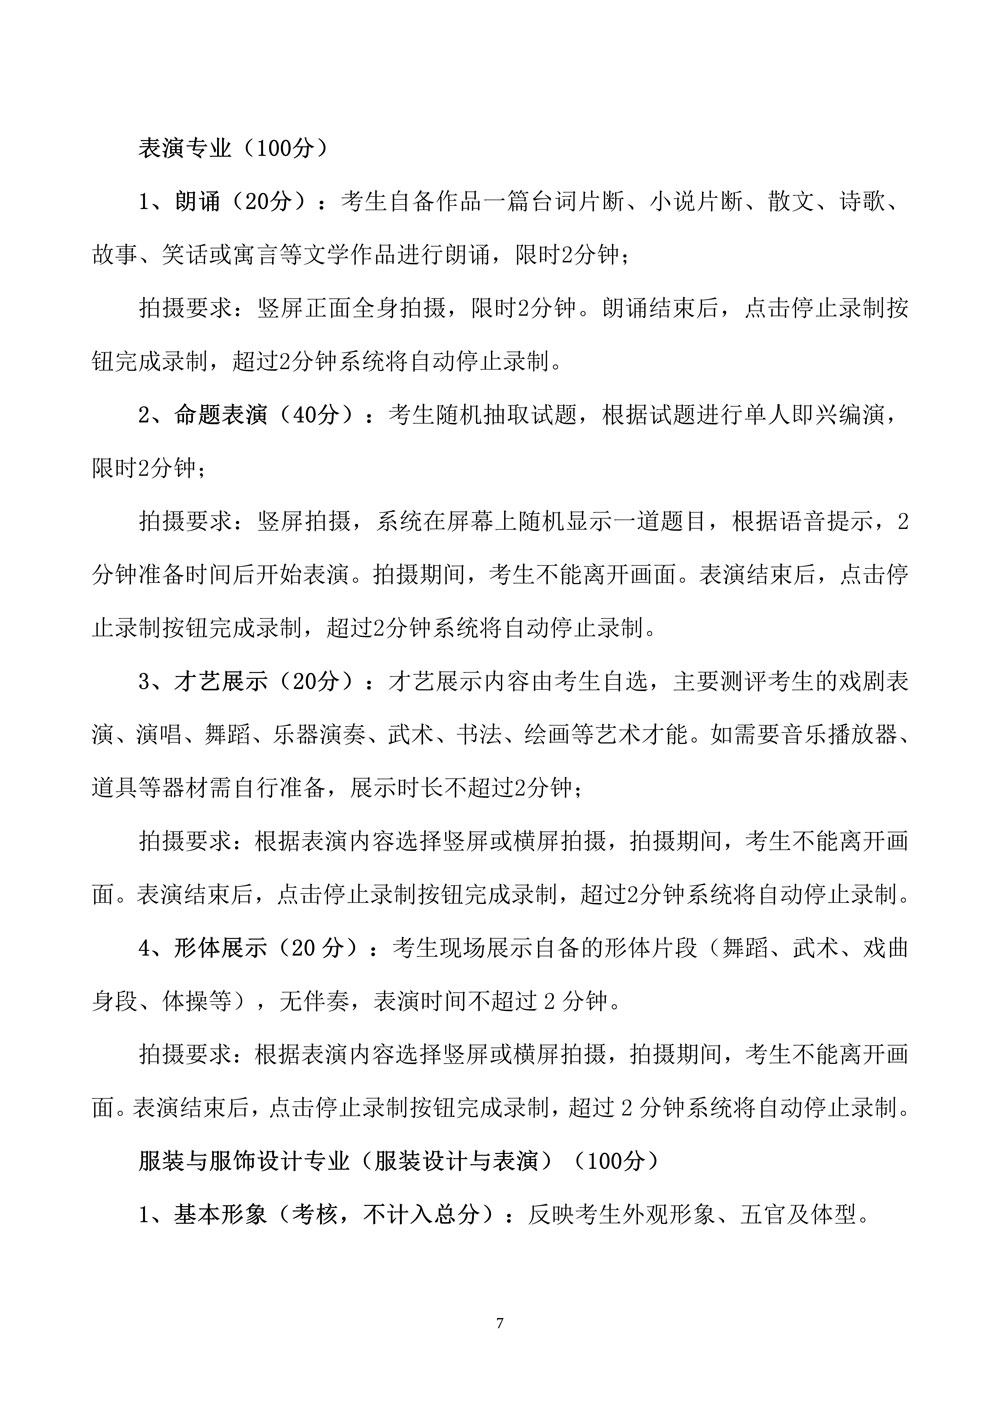 燕京理工学院关于调整2020年艺术类专业校考的公告7.jpg